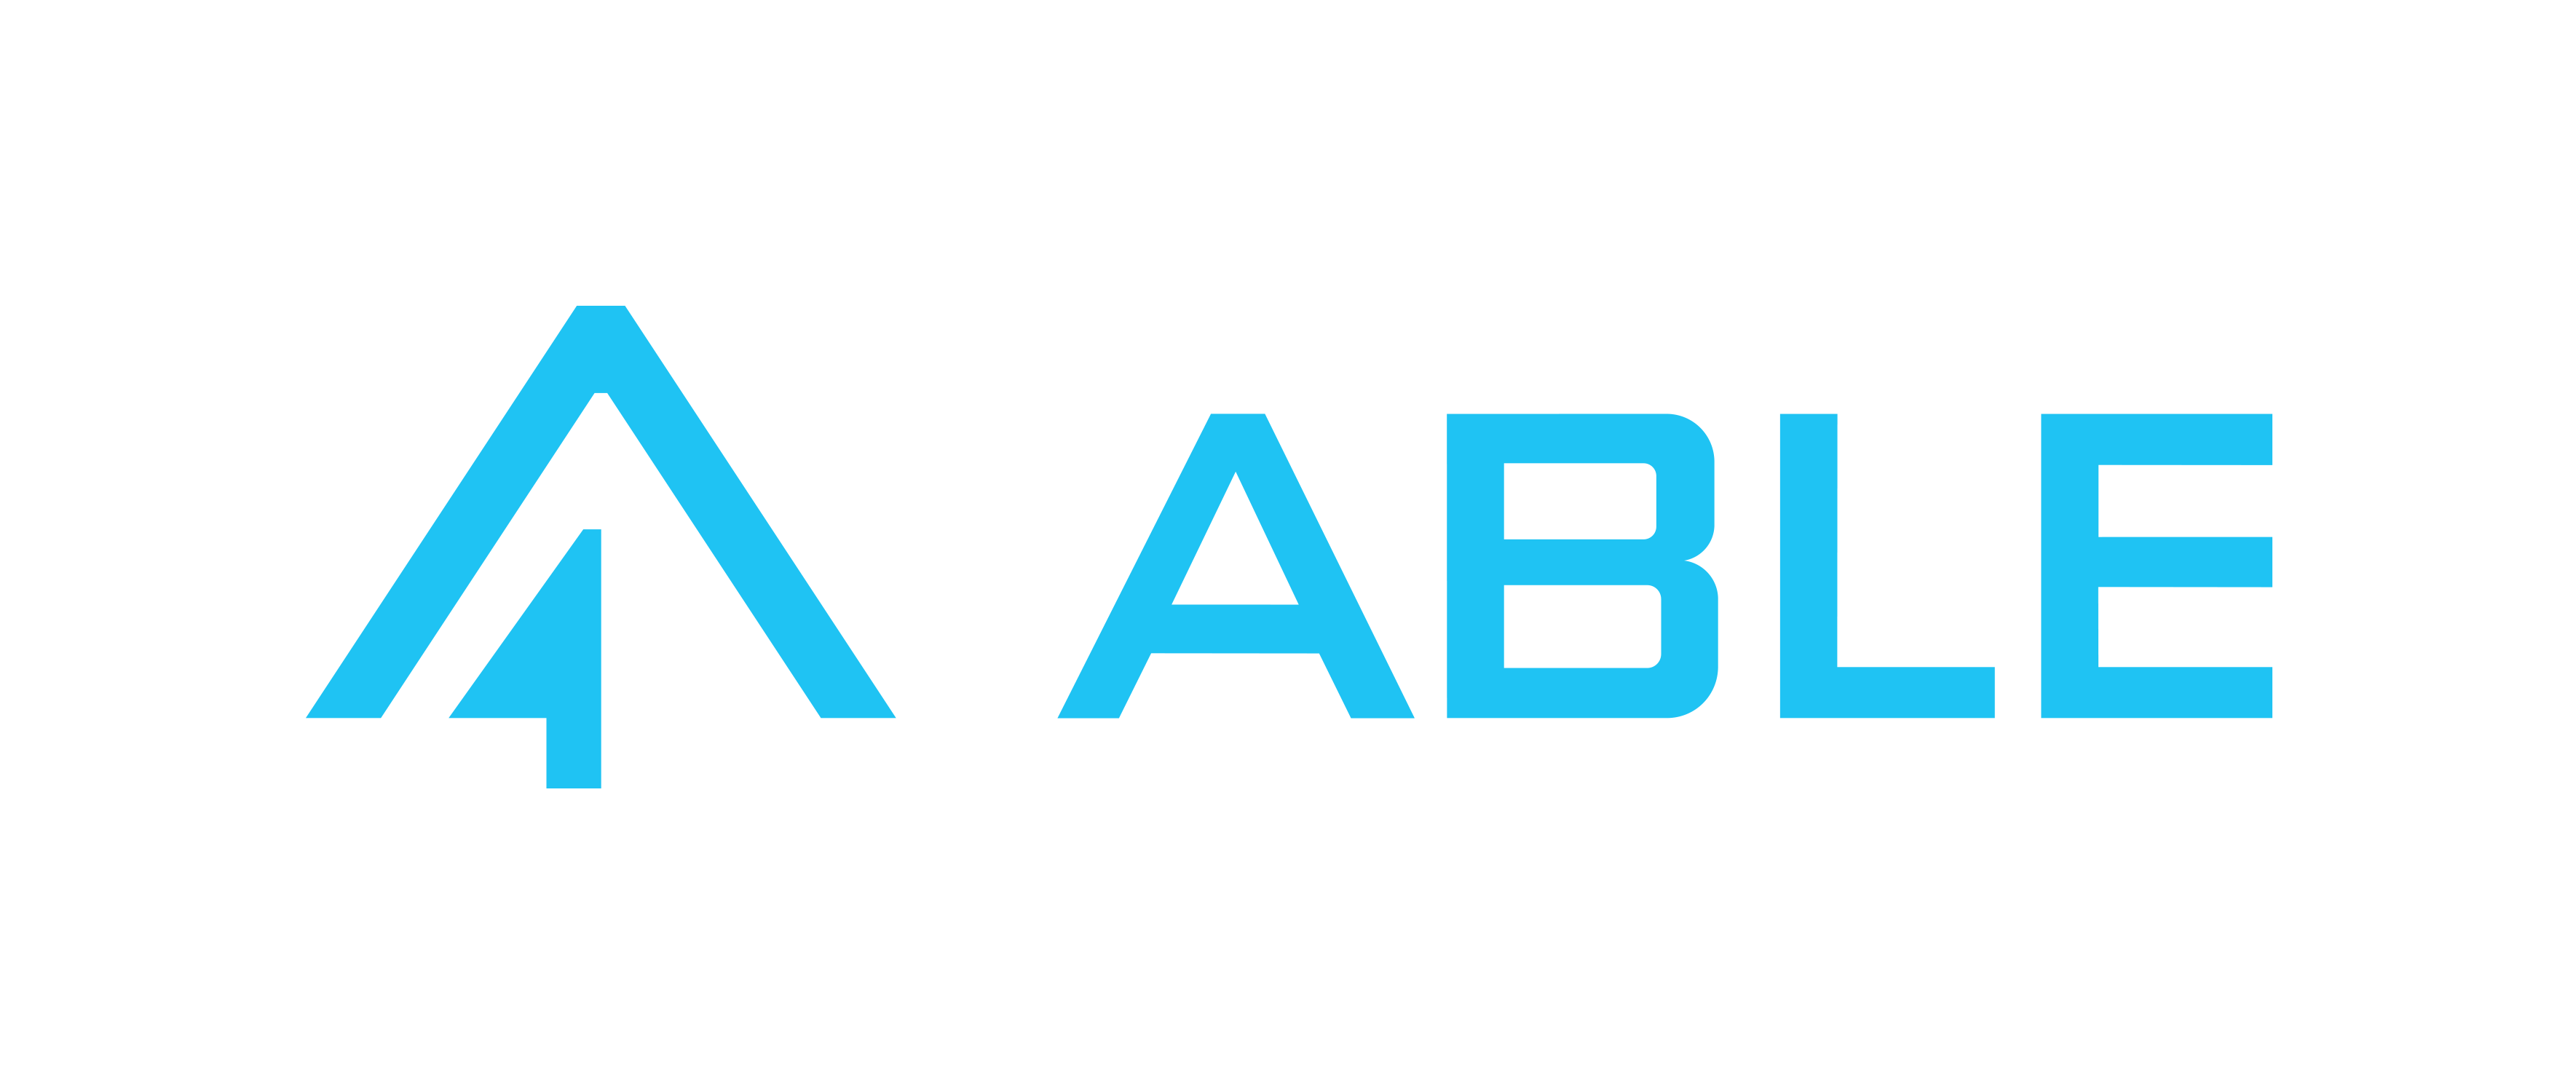 Able Bulgaria logo